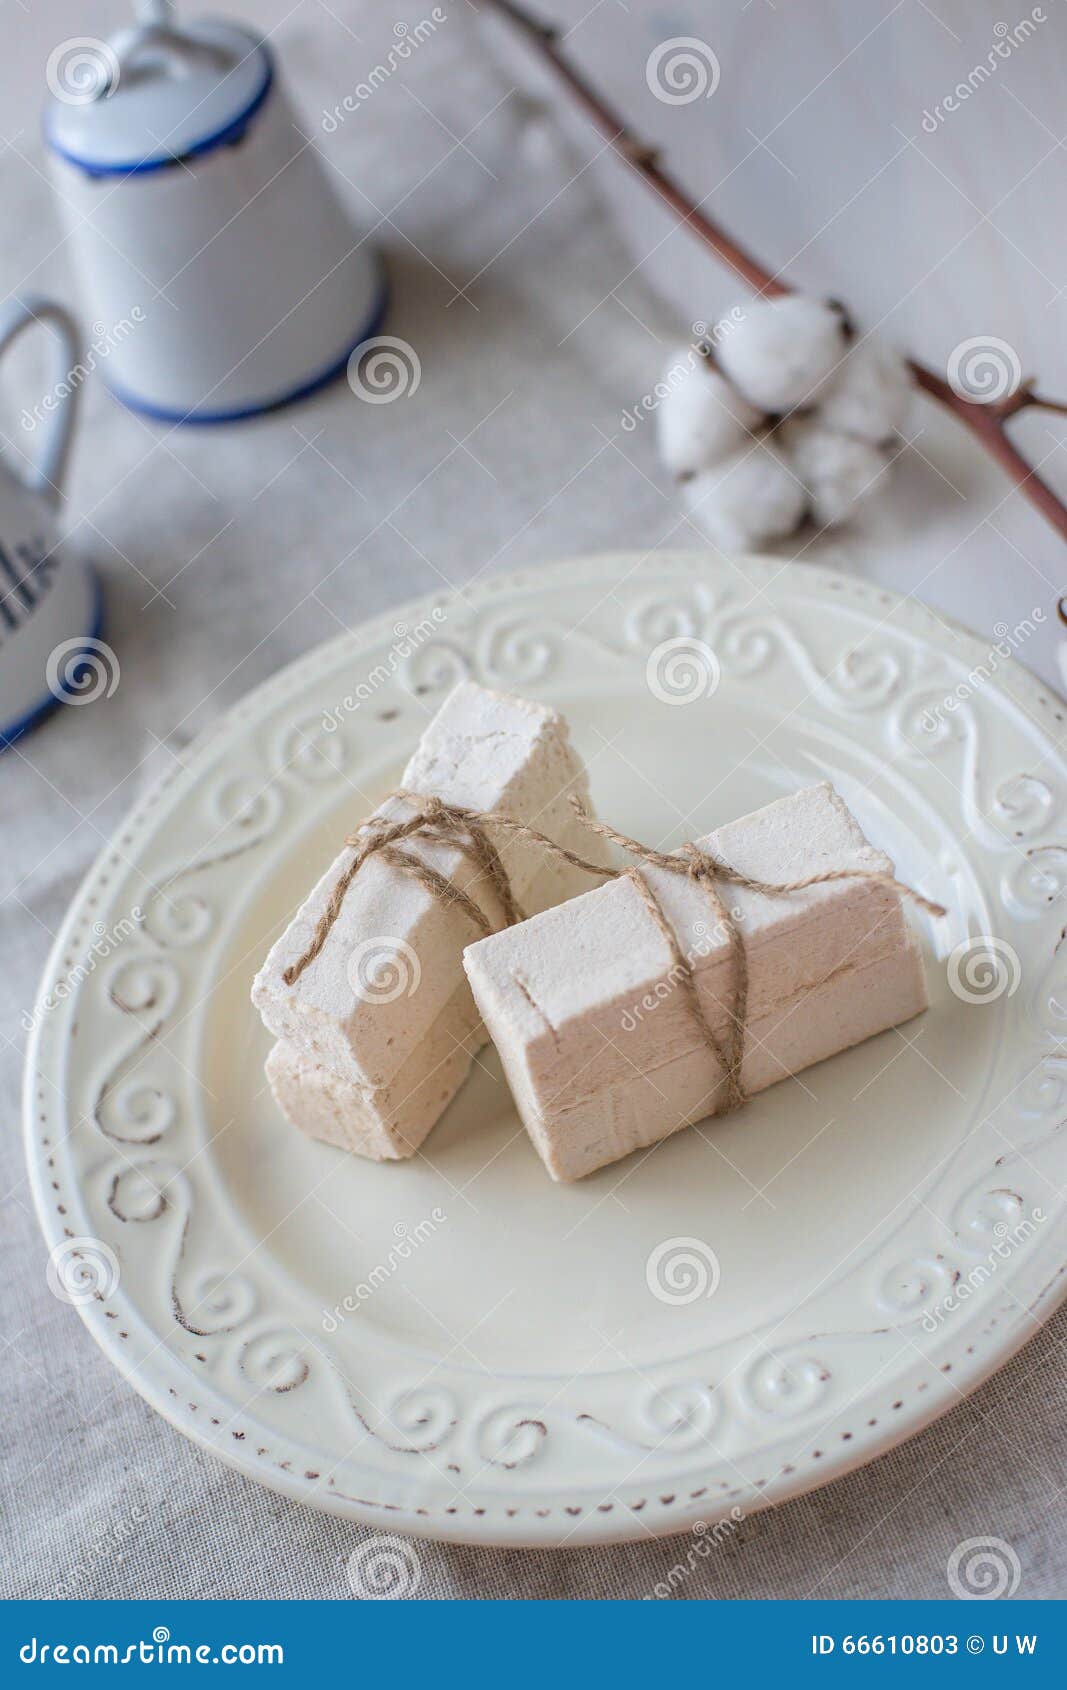 Ραβδιά marshmallow σε ένα ελαφρύ υπόβαθρο. Marshmallow ραβδιά σε ένα πιάτο Ελαφριά ανασκόπηση